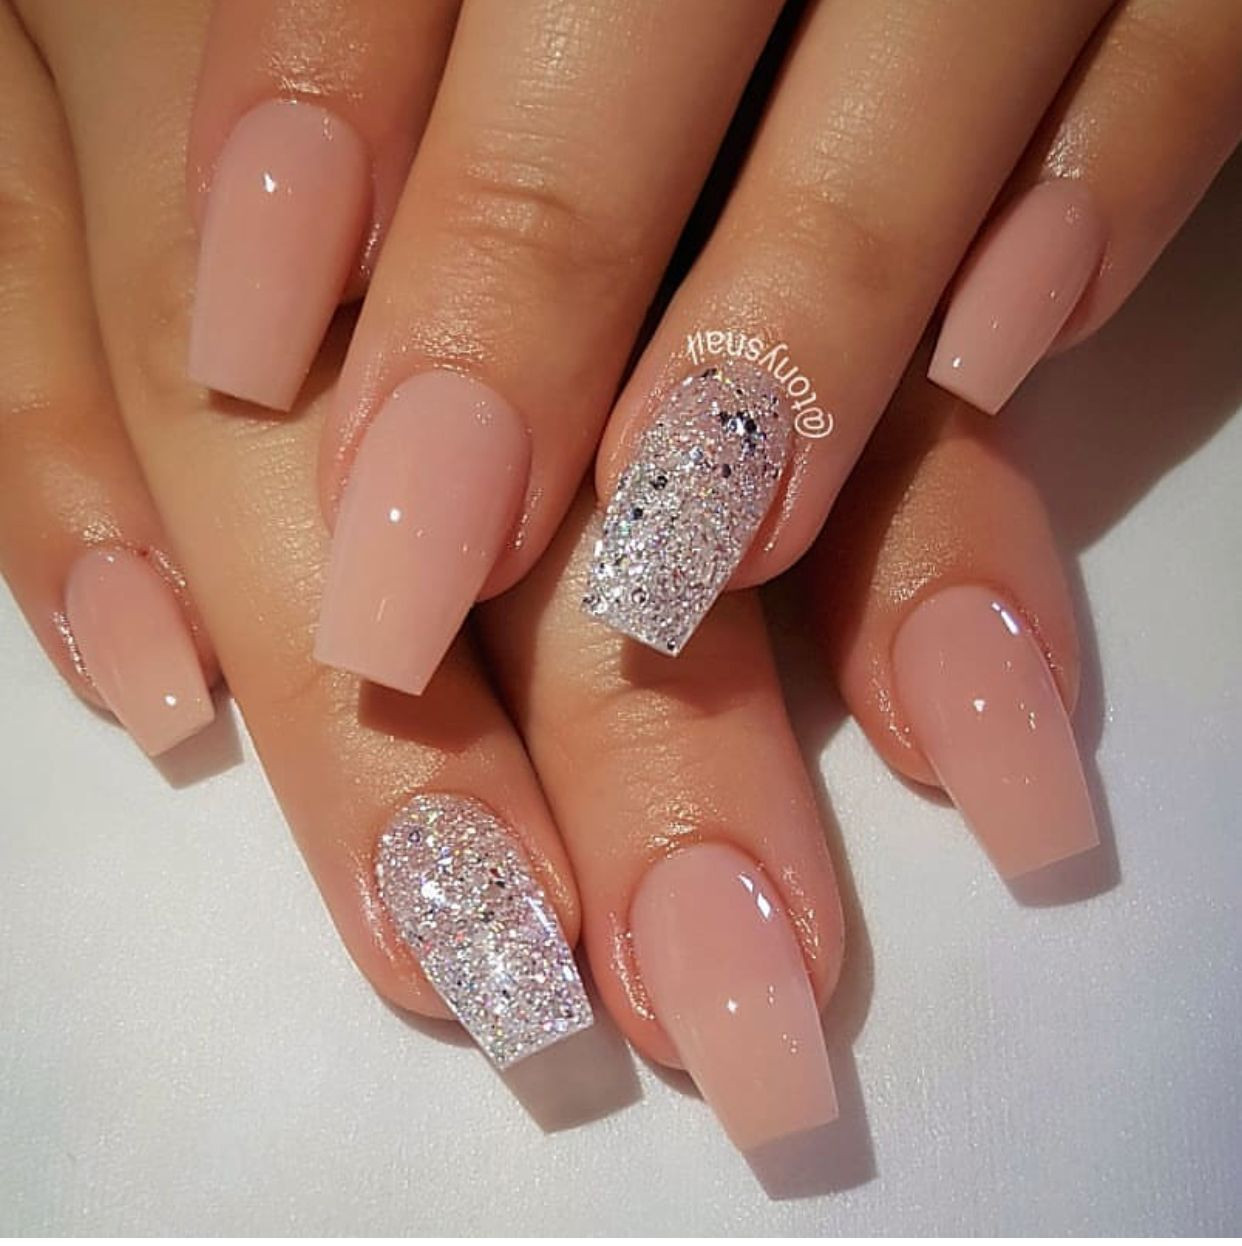 Pink And Silver Glitter Nails
 Nail art pink and silver glitter nails in 2019